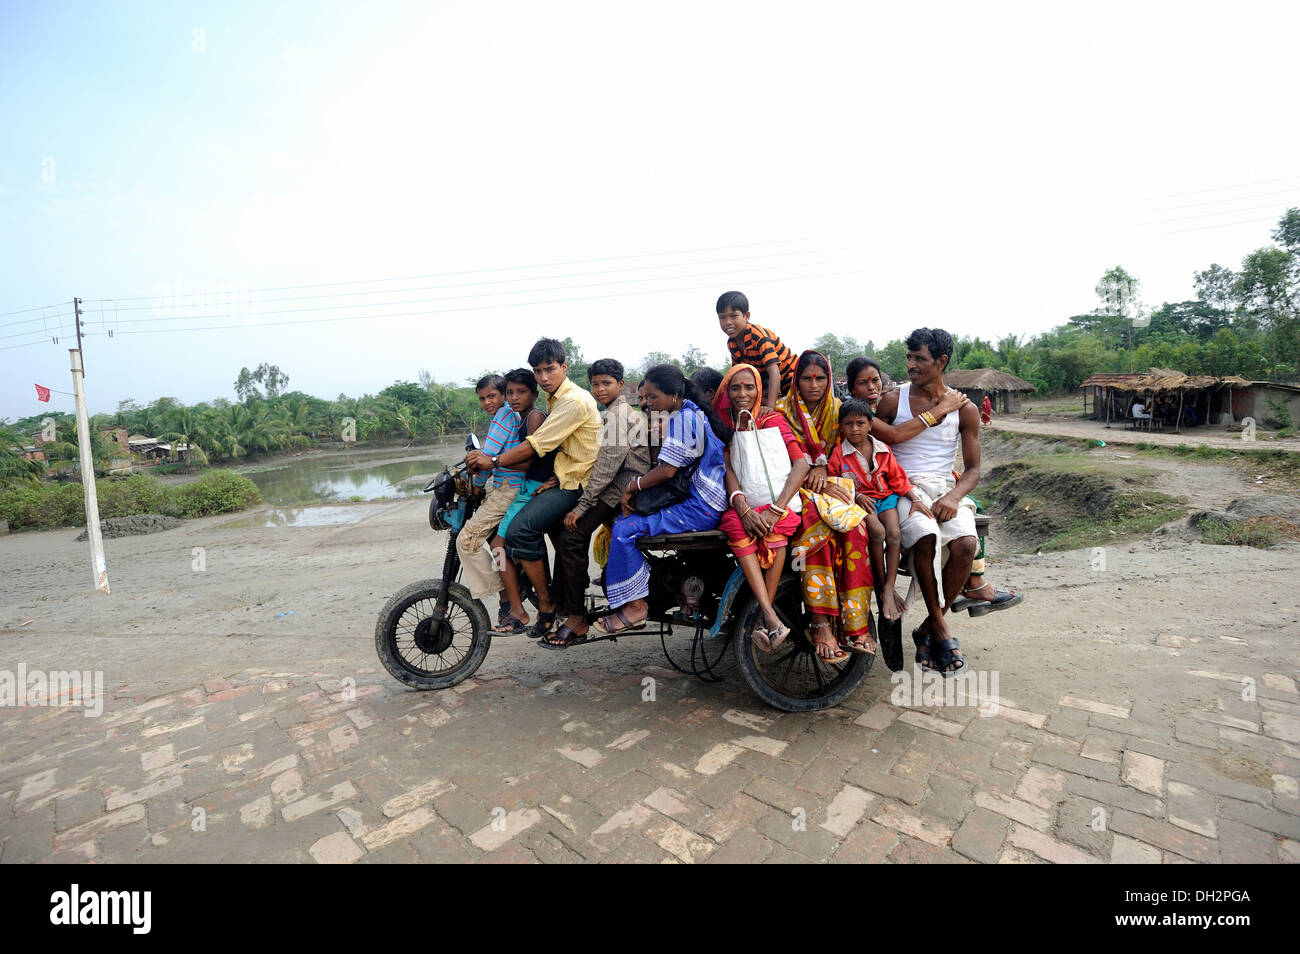 Douze indiens sur un tricycle kolkata calcutta Bengale Ouest Inde Asie Banque D'Images